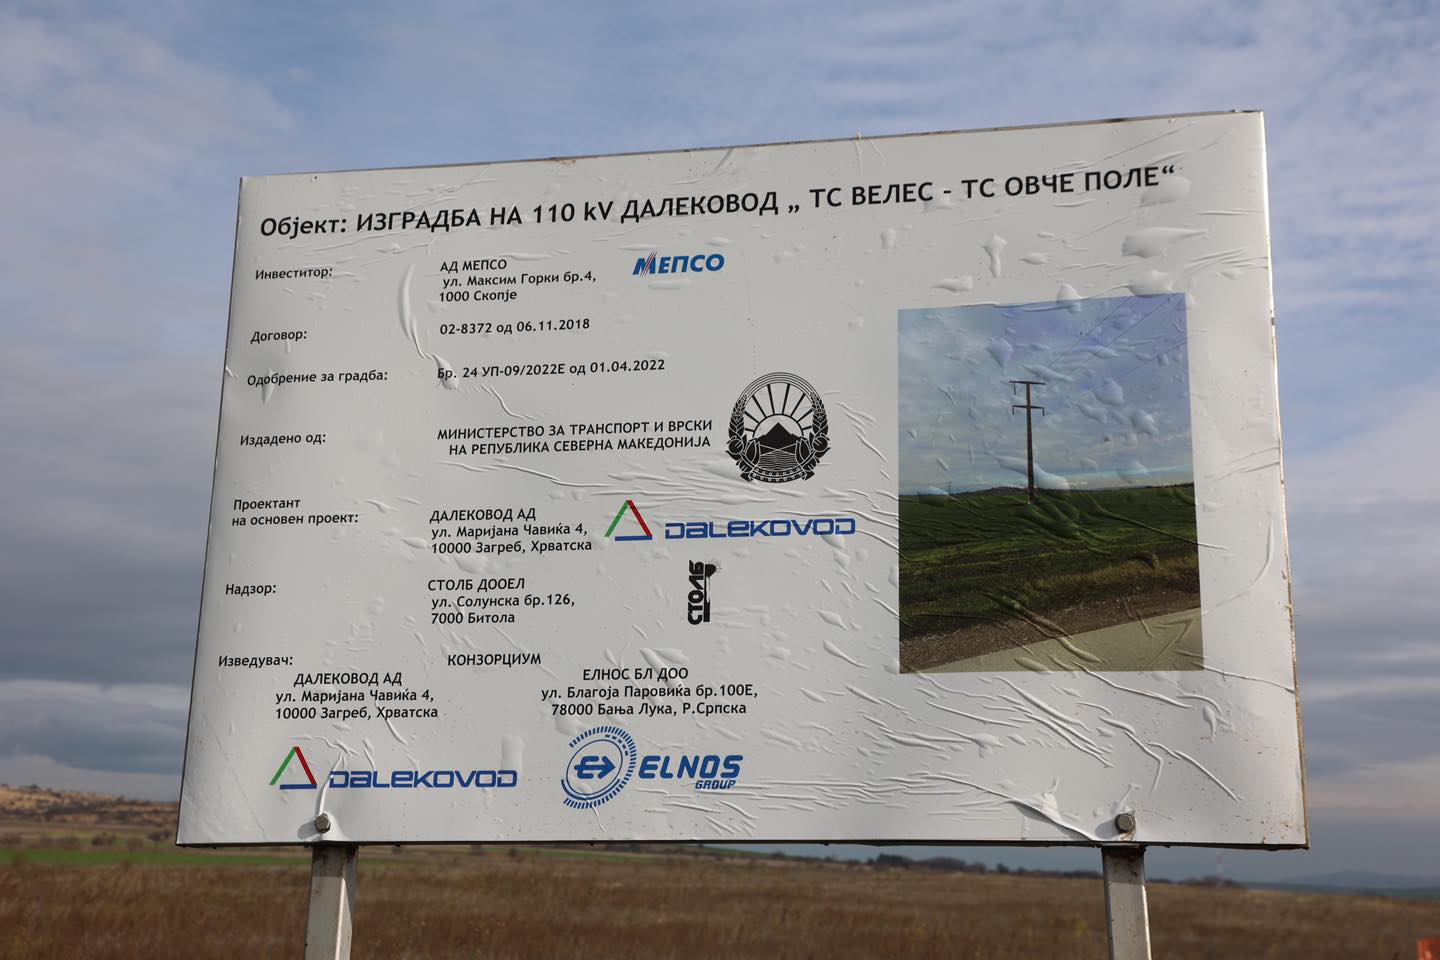 Започна изградбата на 110 kV  далекувод ТС Велес-ТС Овче поле